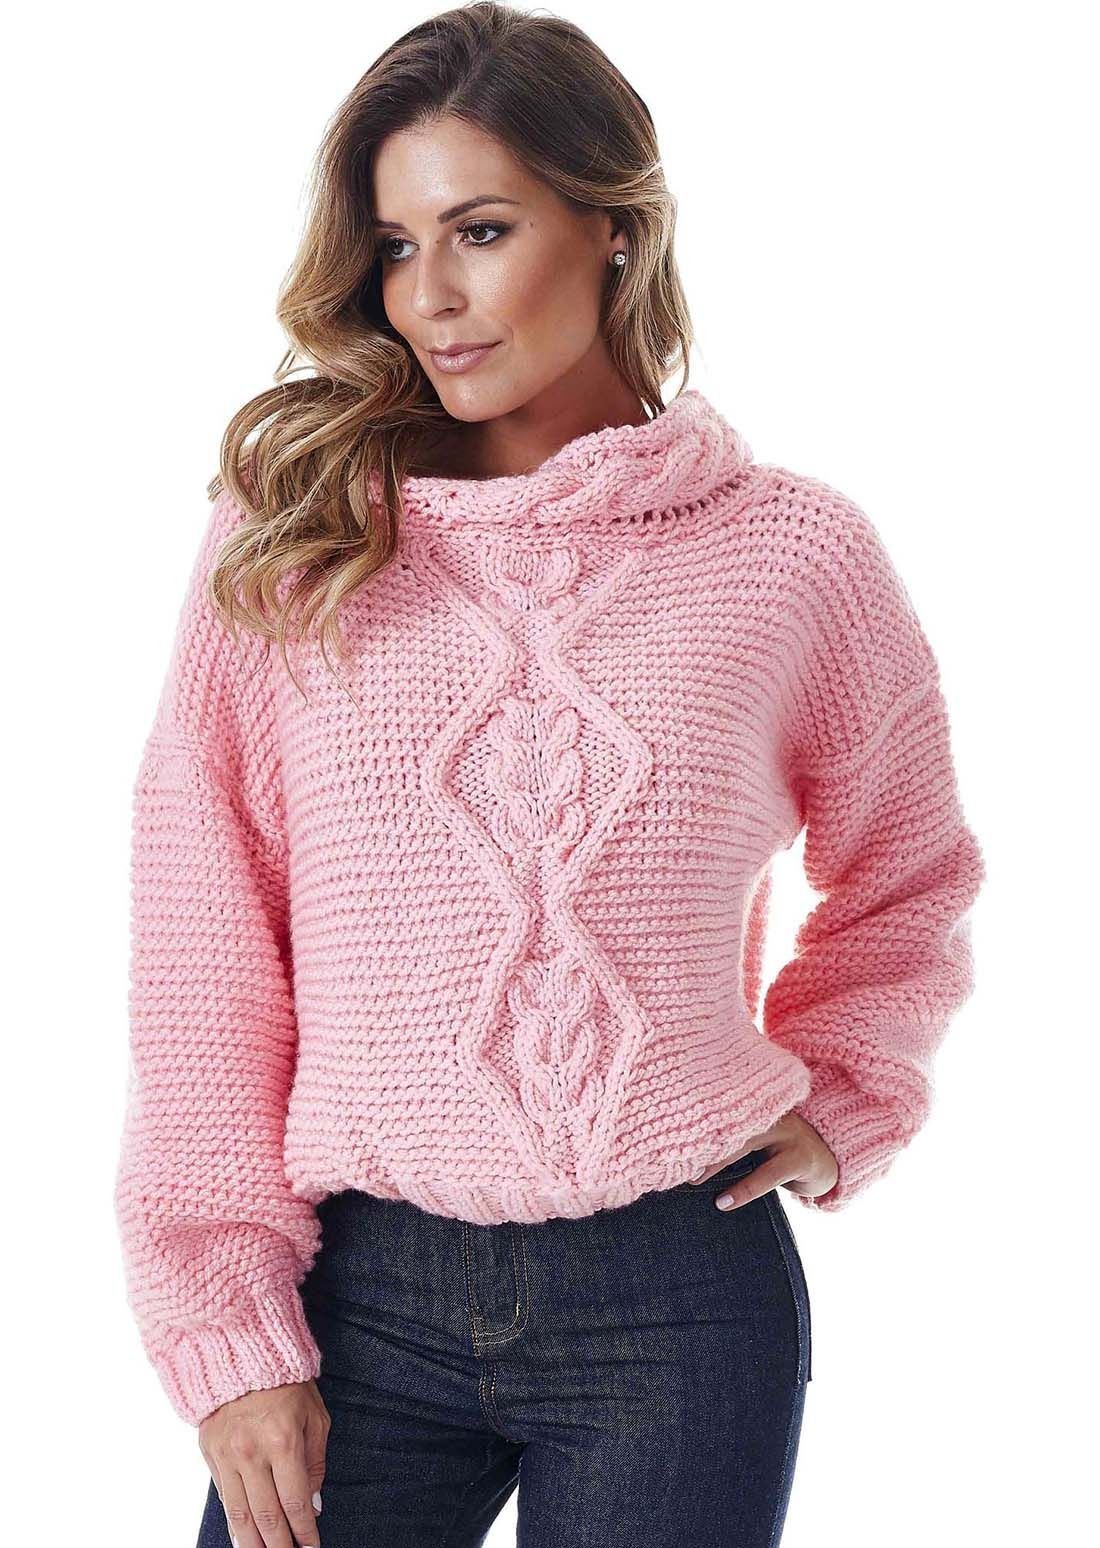 Вязаный джемпер спицами для женщин. Пуловер Basler пуловер. Вязаный свитер. Красивые свитера для женщин. Вязаные кофты женские.